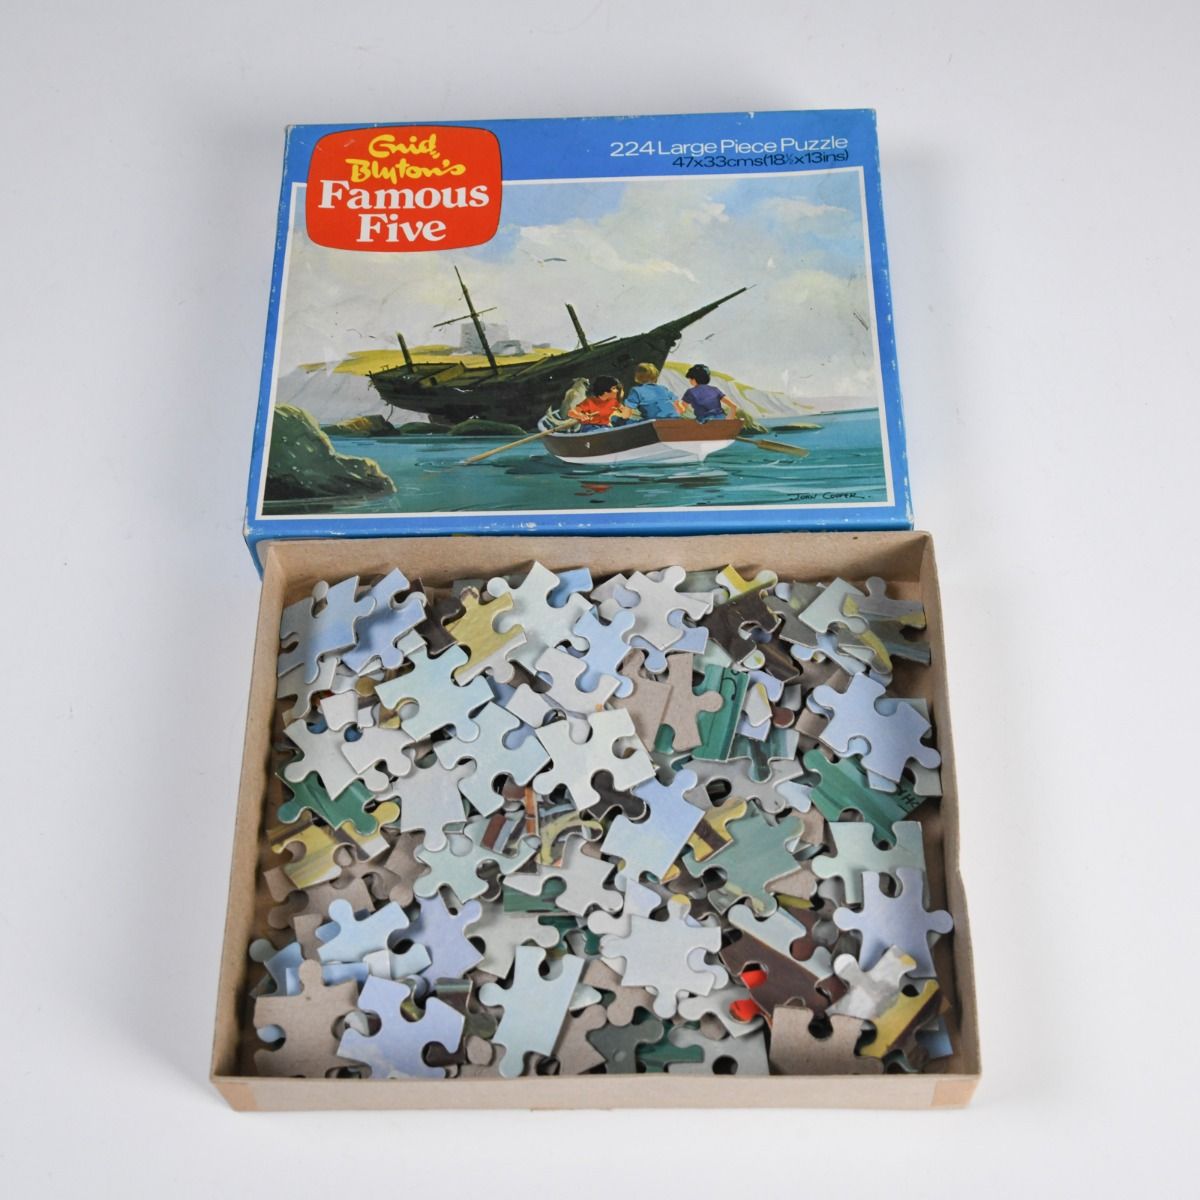 'Enid Blyton's Famous Five' 1975 224 Piece Puzzle